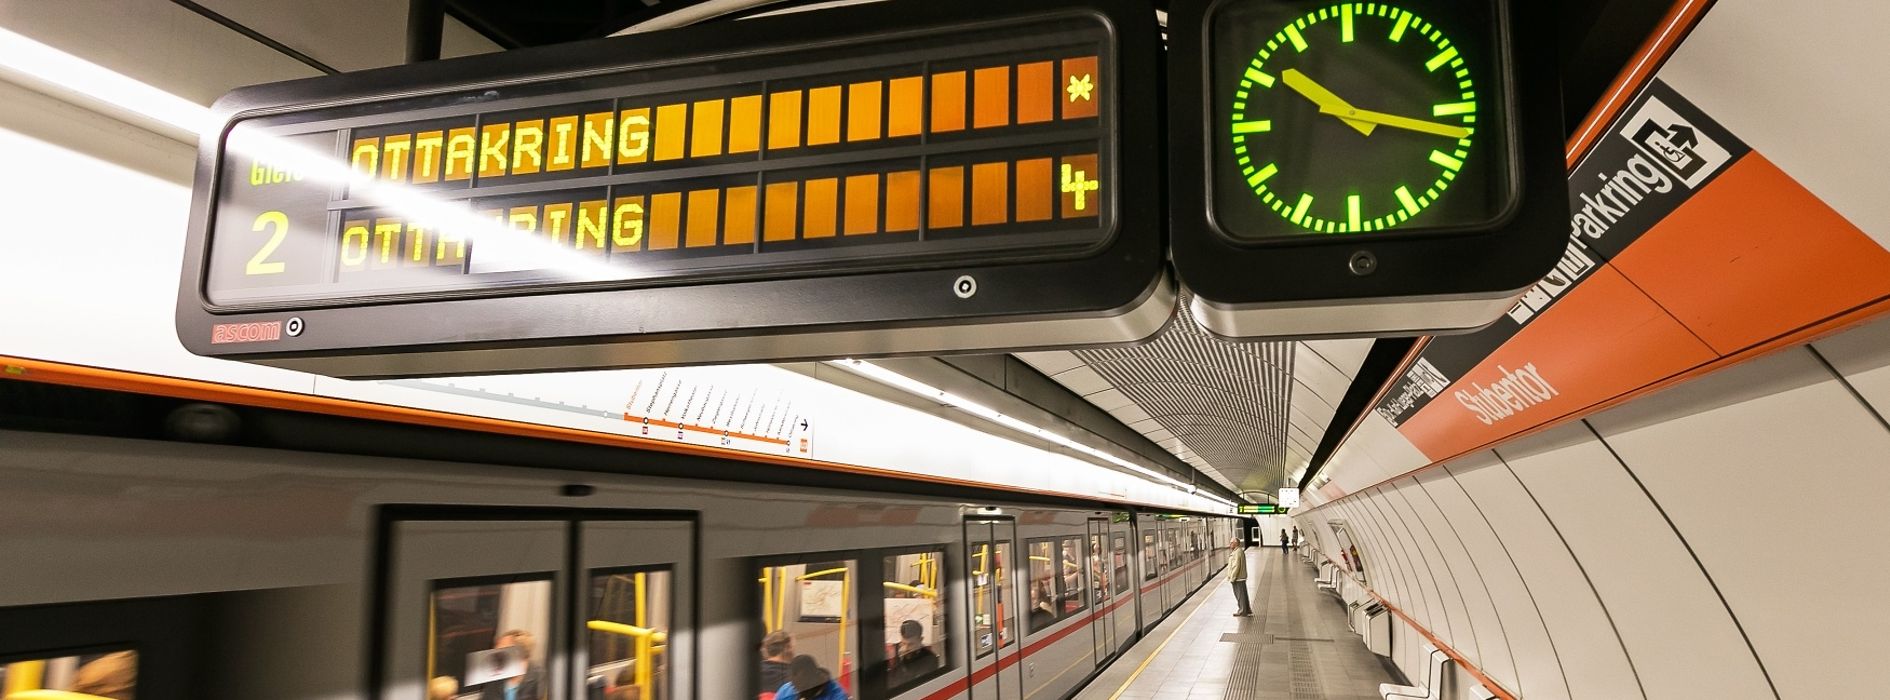 Panneau d'information dans le métro de Vienne avec horloge